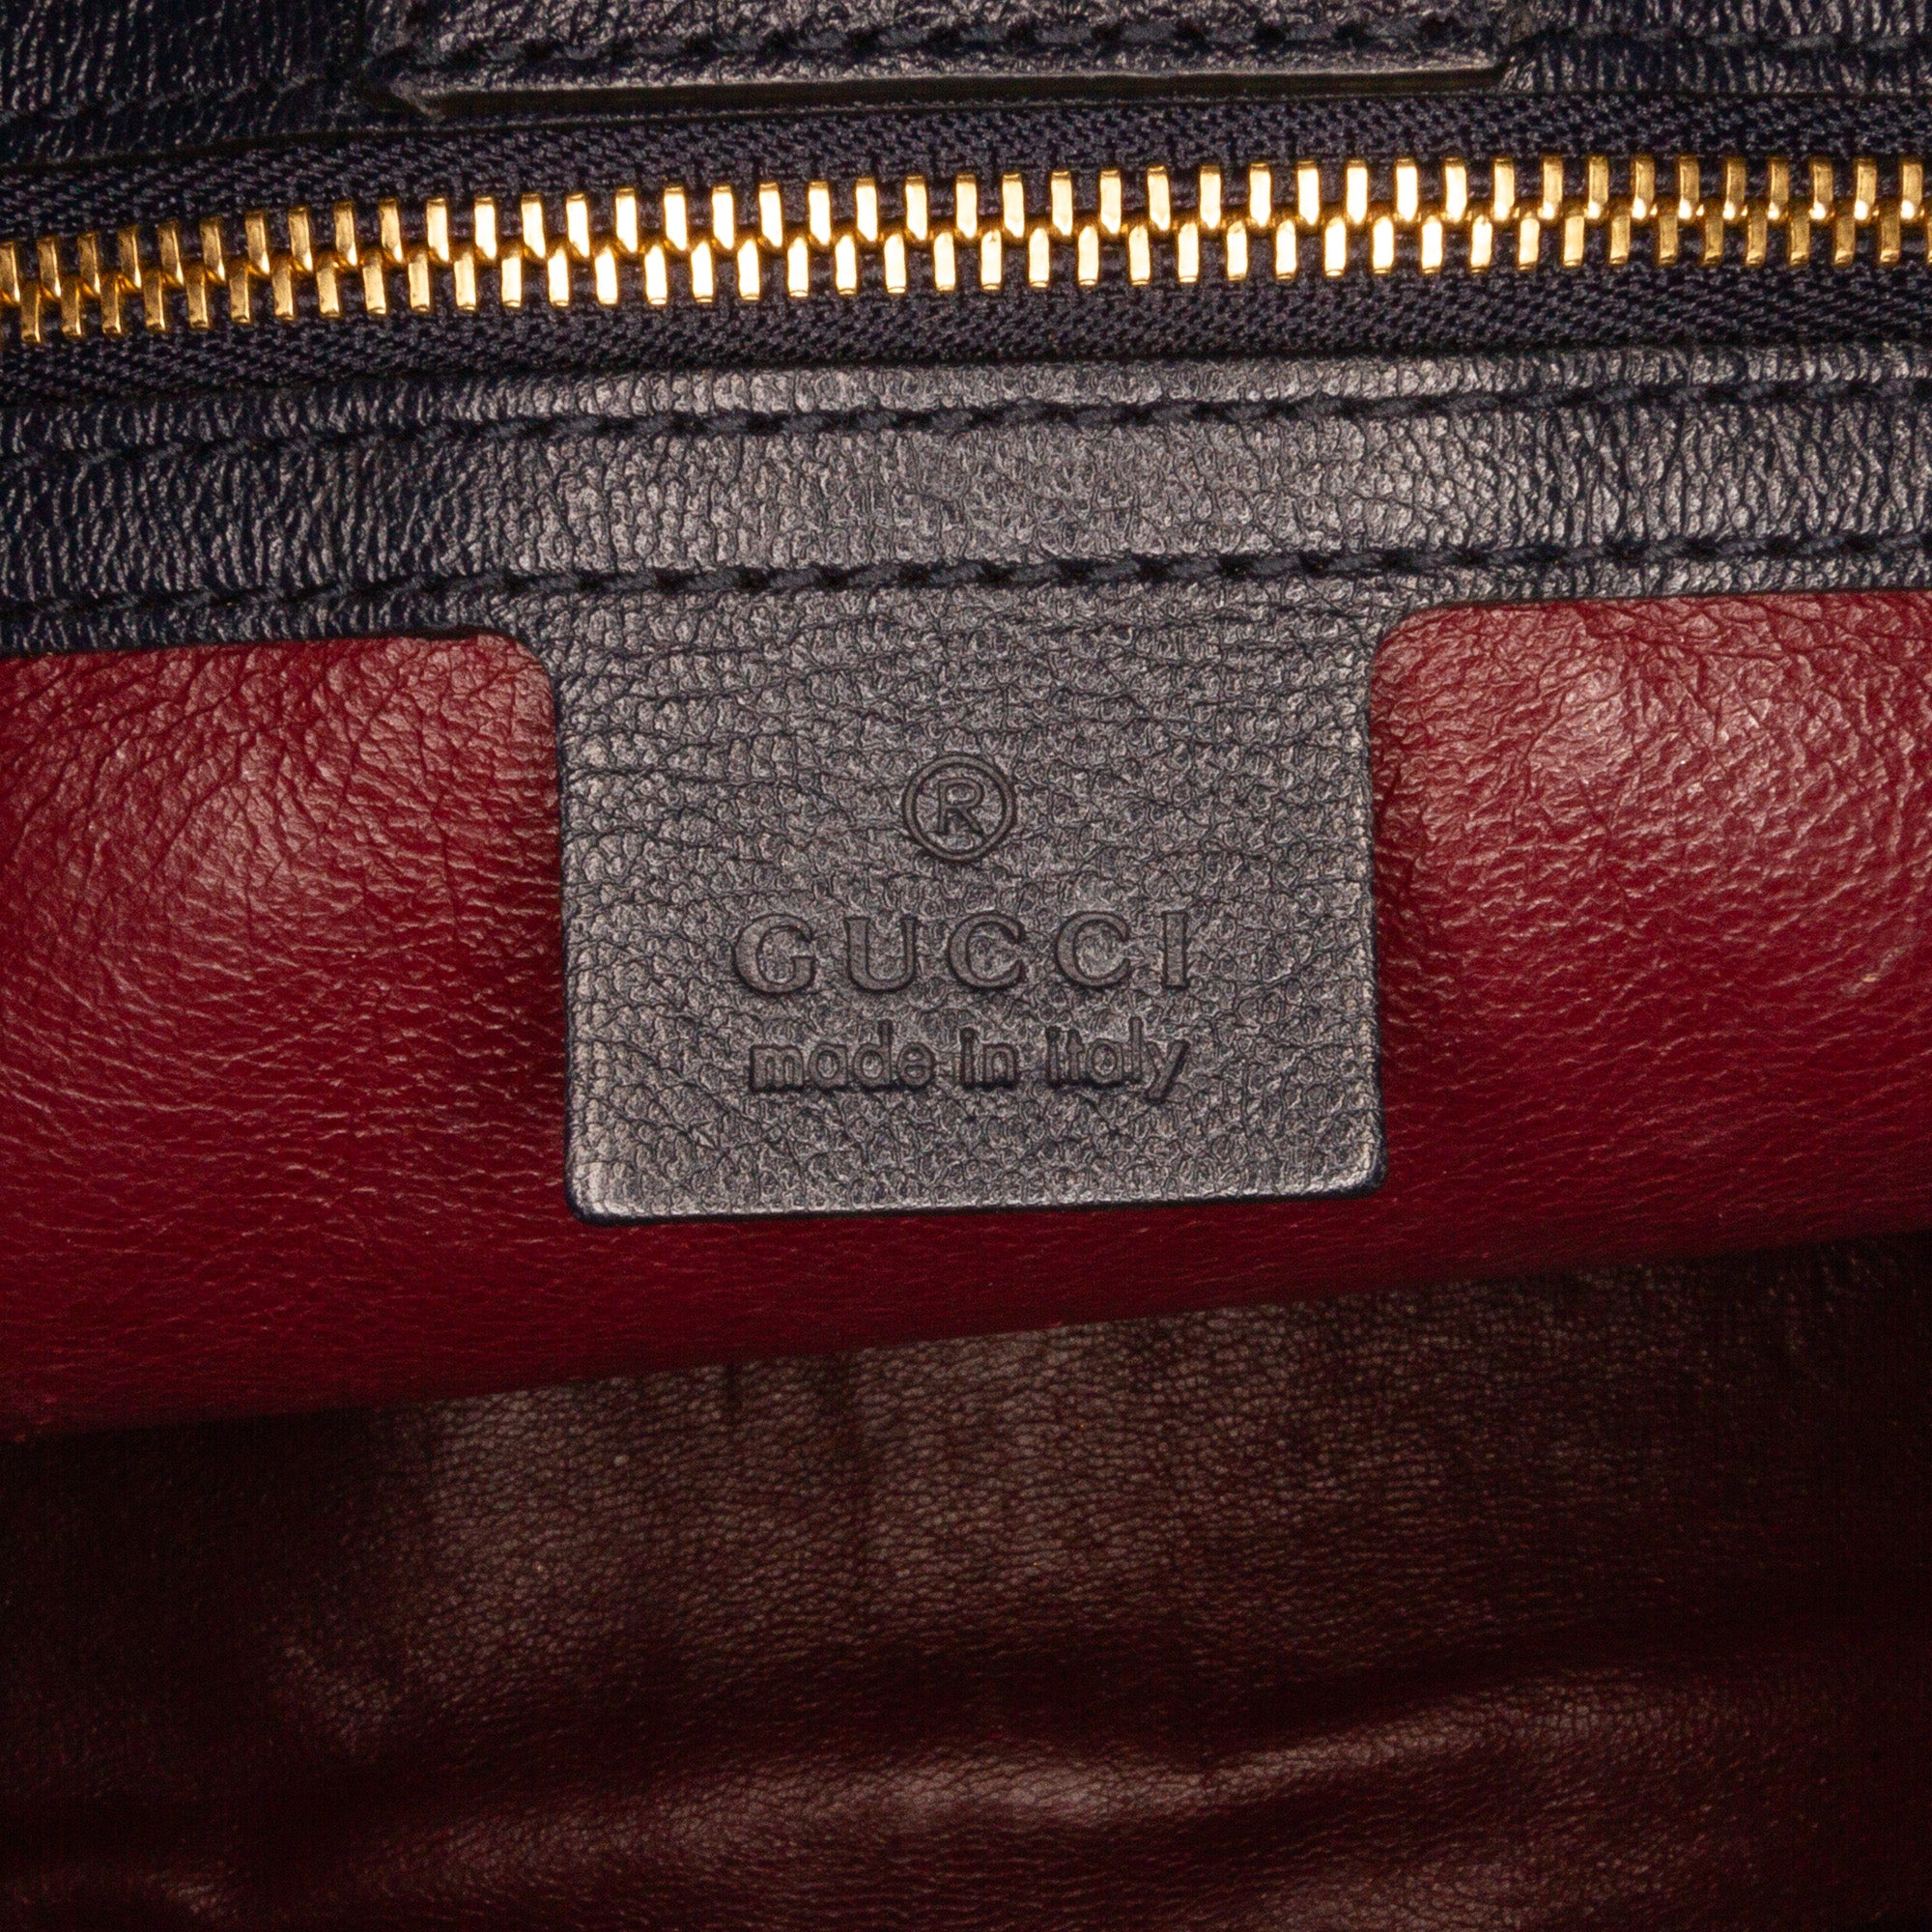 Gucci Horsebit 1955 tote bag